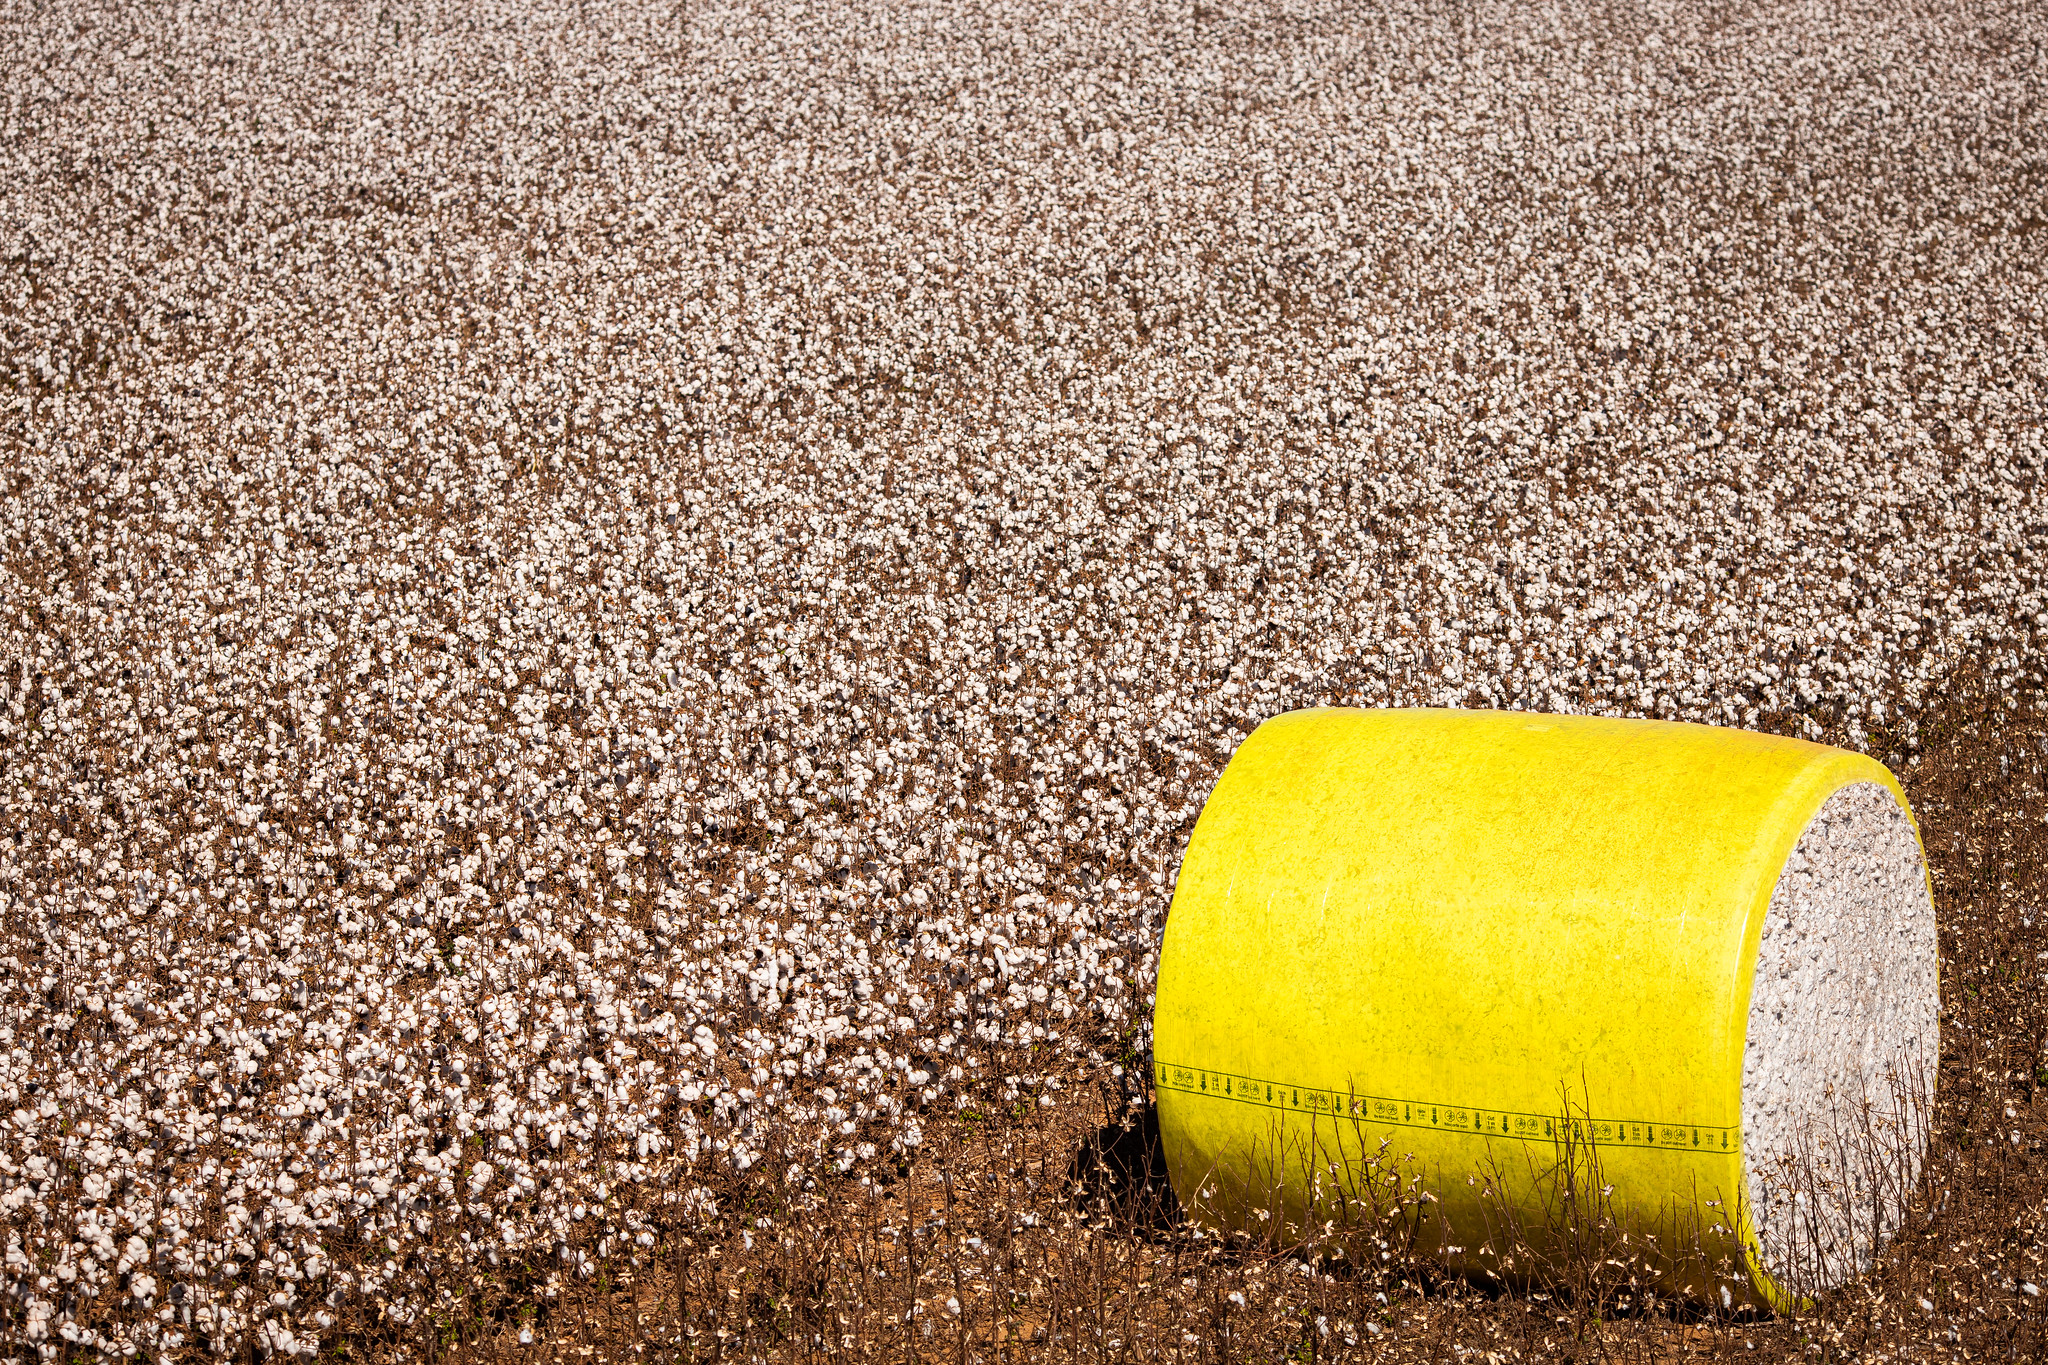 Colheita de algodão entra na reta final em Goiás